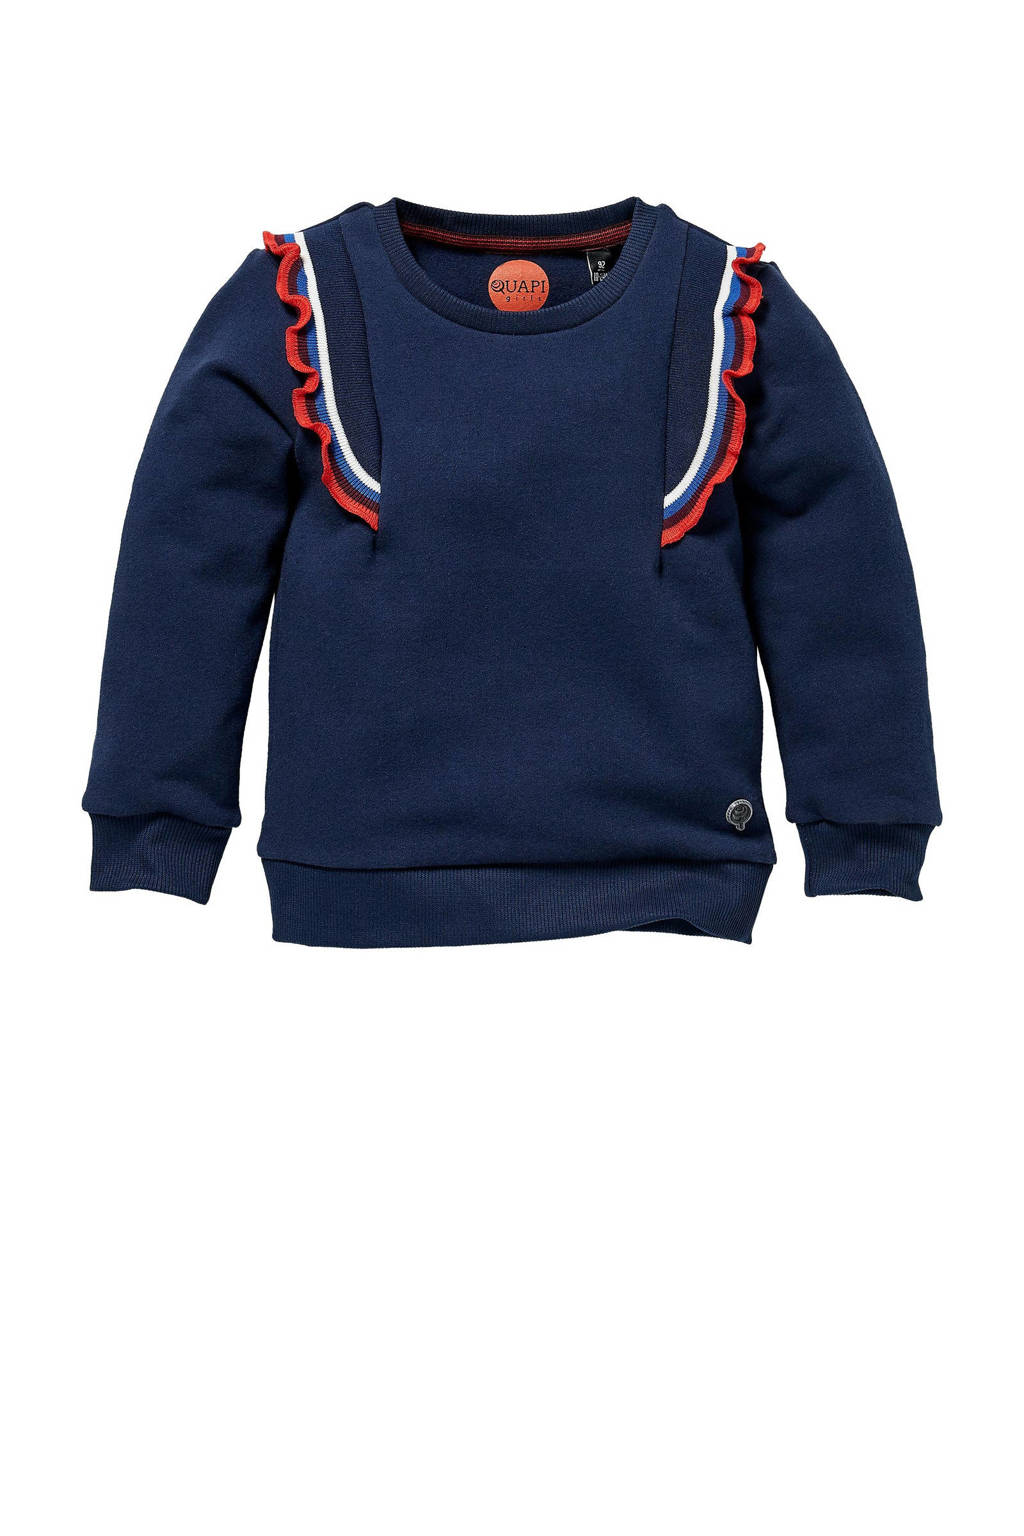 Quapi Mini sweater Linn met ruches donkerblauw/rood